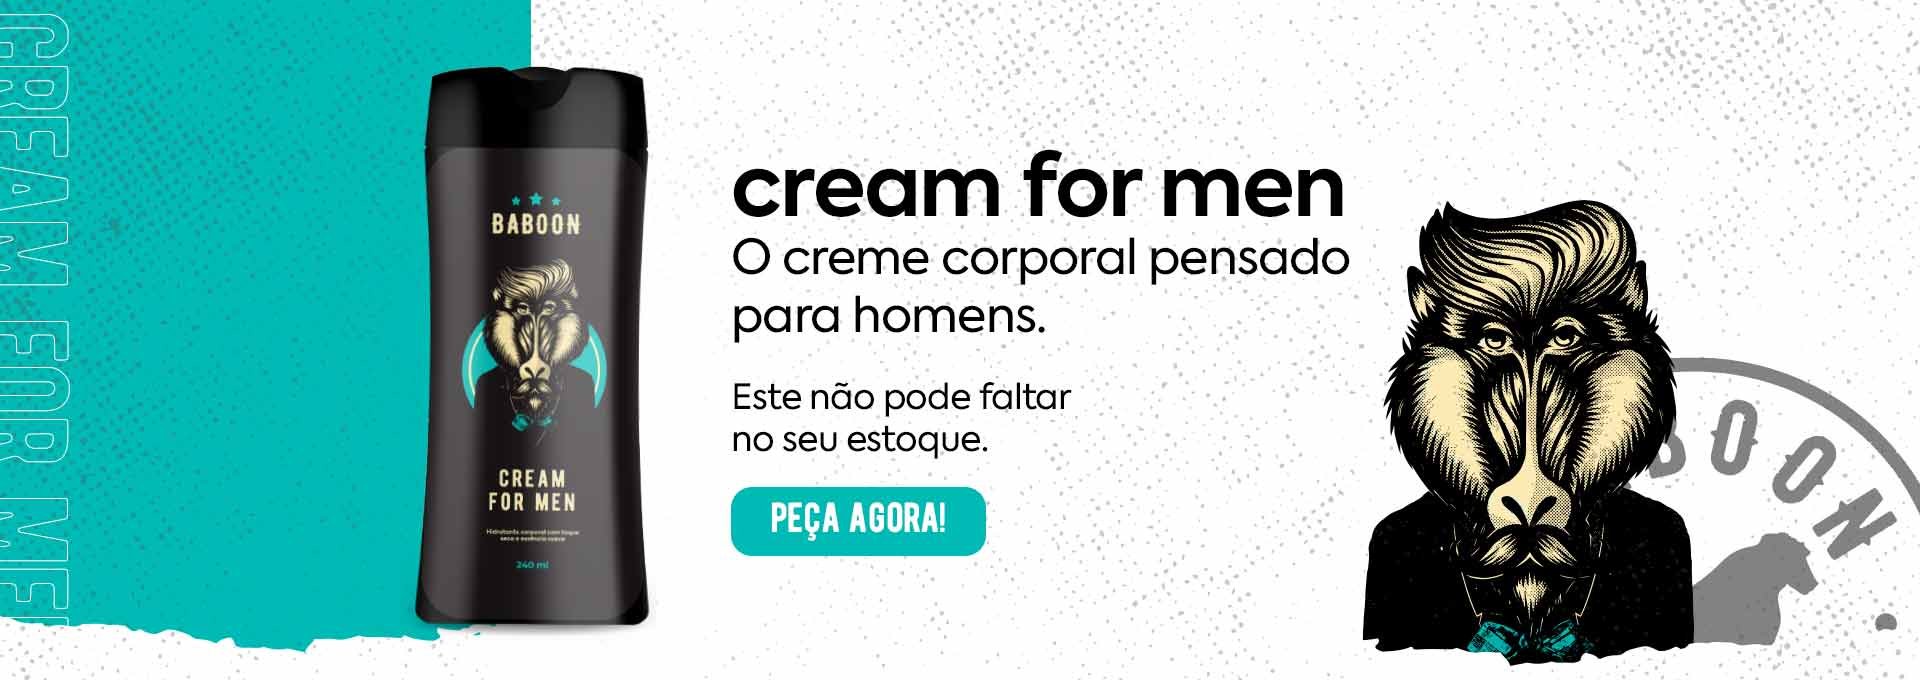 cream-for-men